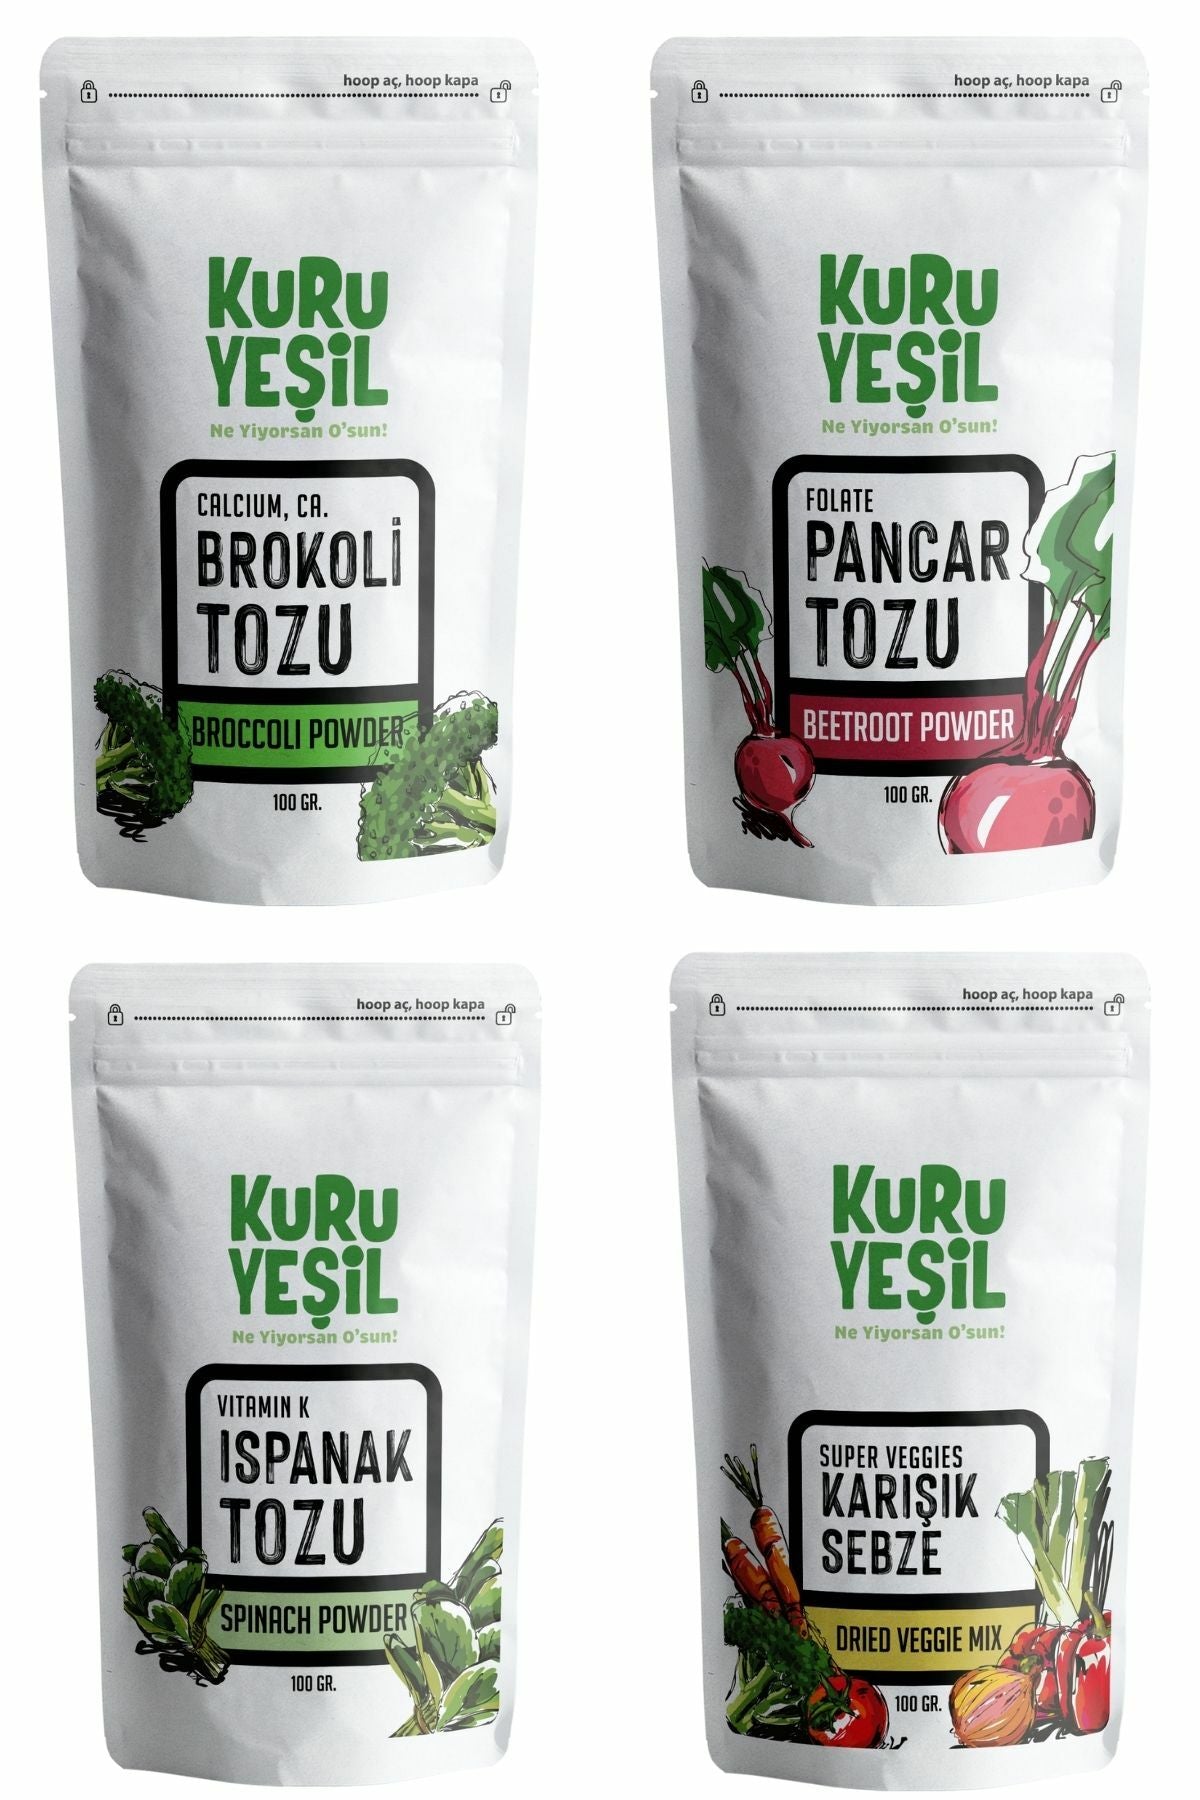 kuru yeşil dried vegetable package 400g